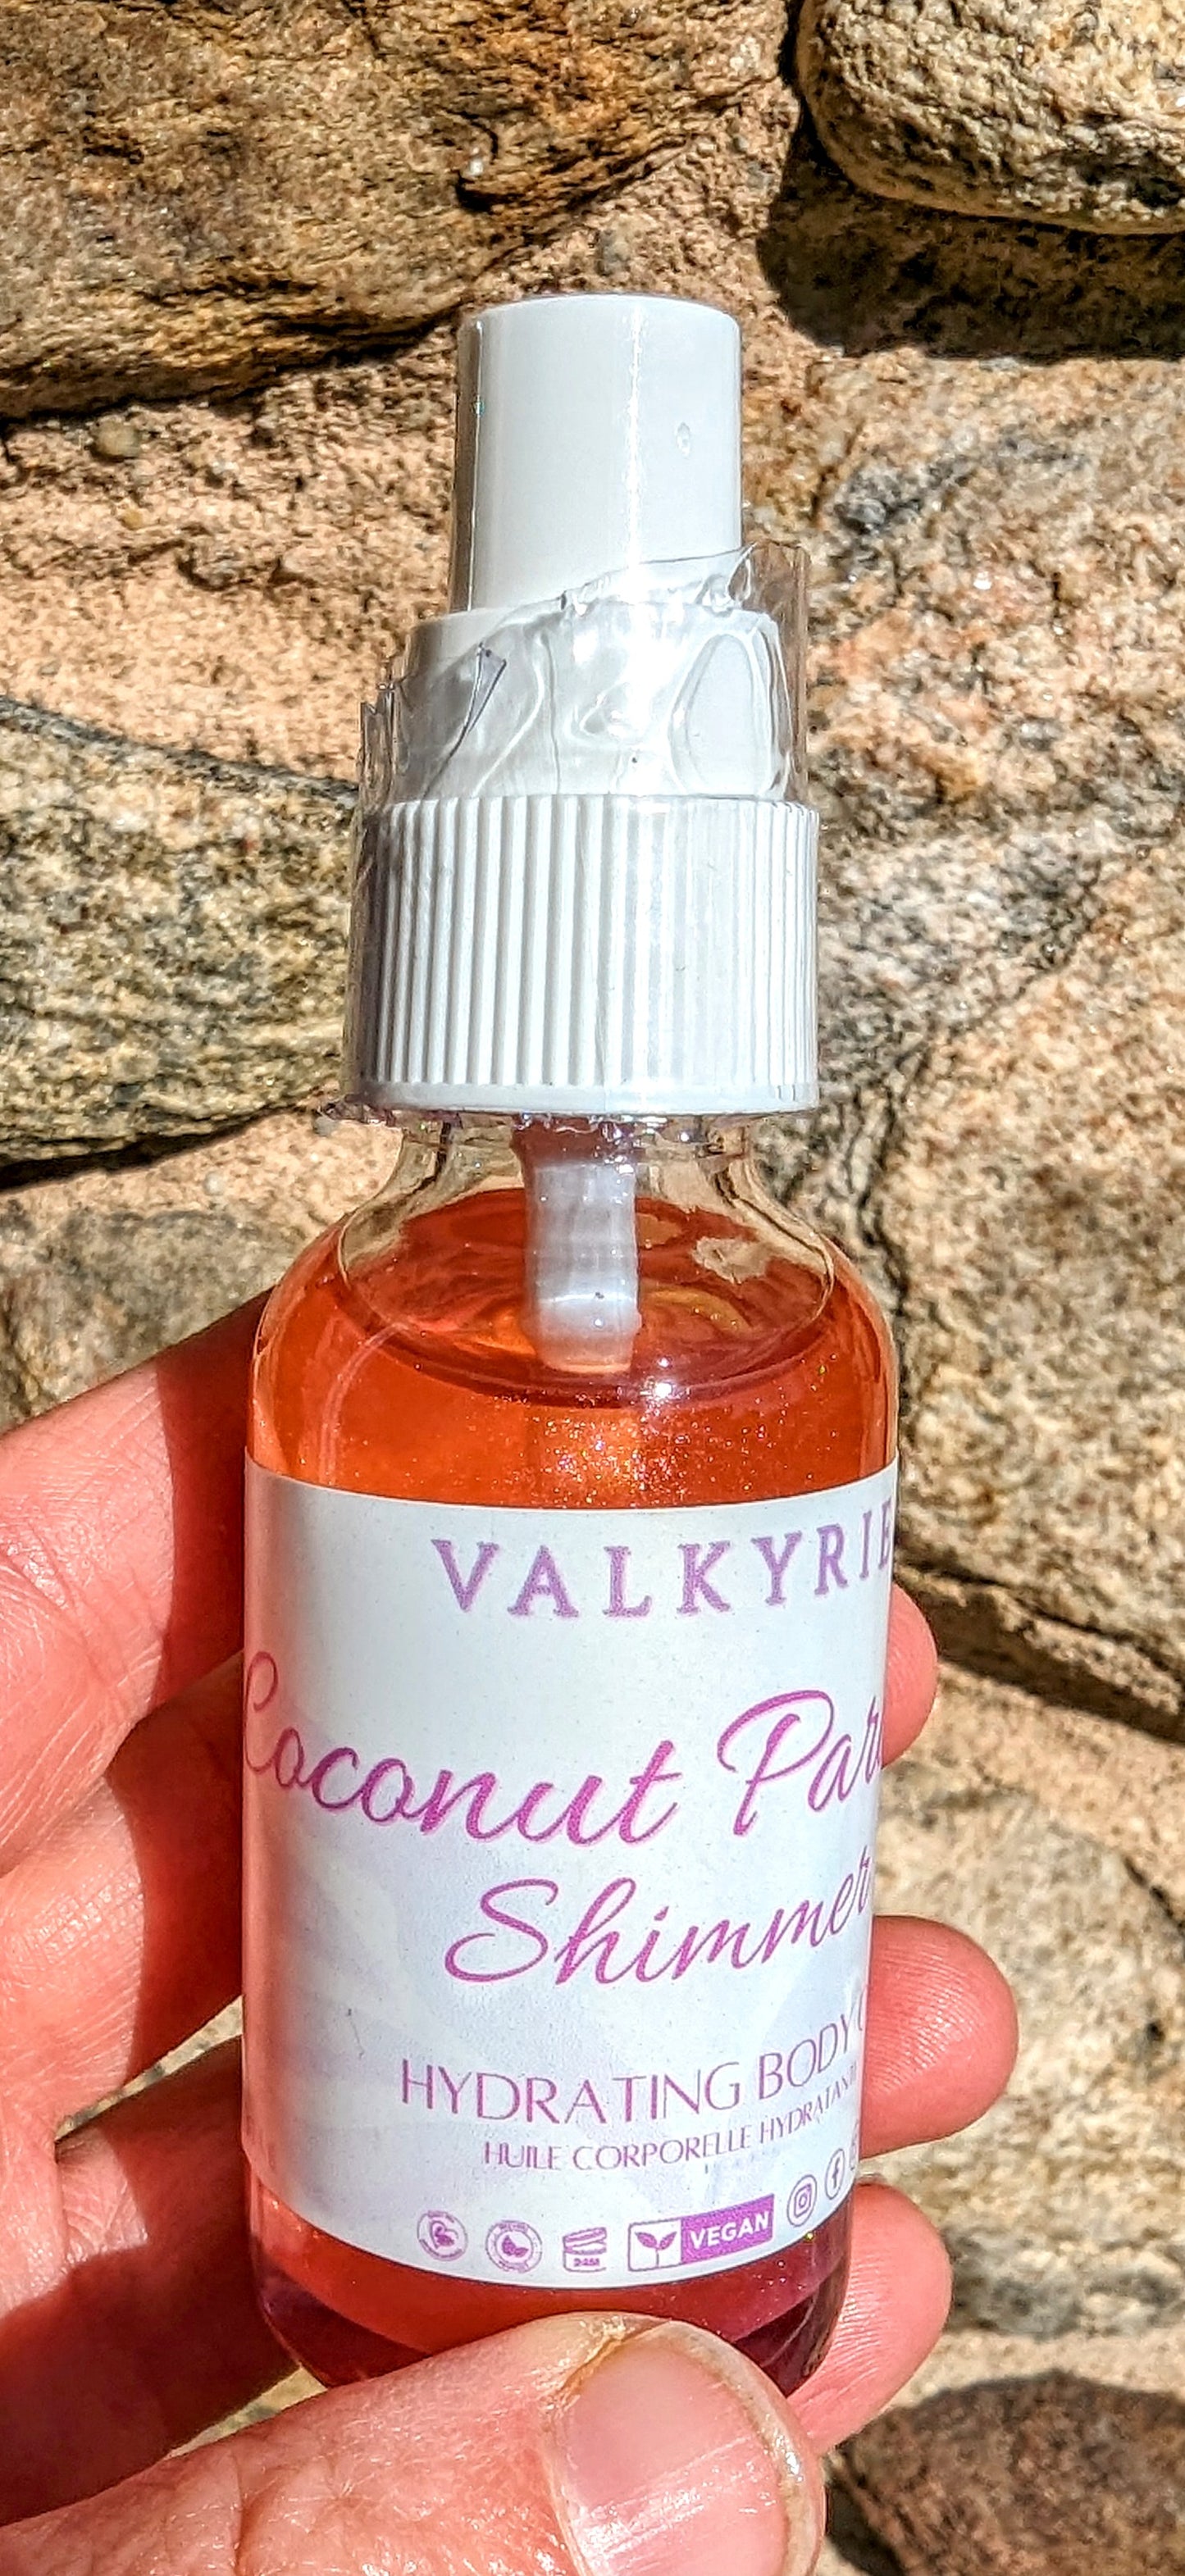 Valkyrie Global Shimmering body oil